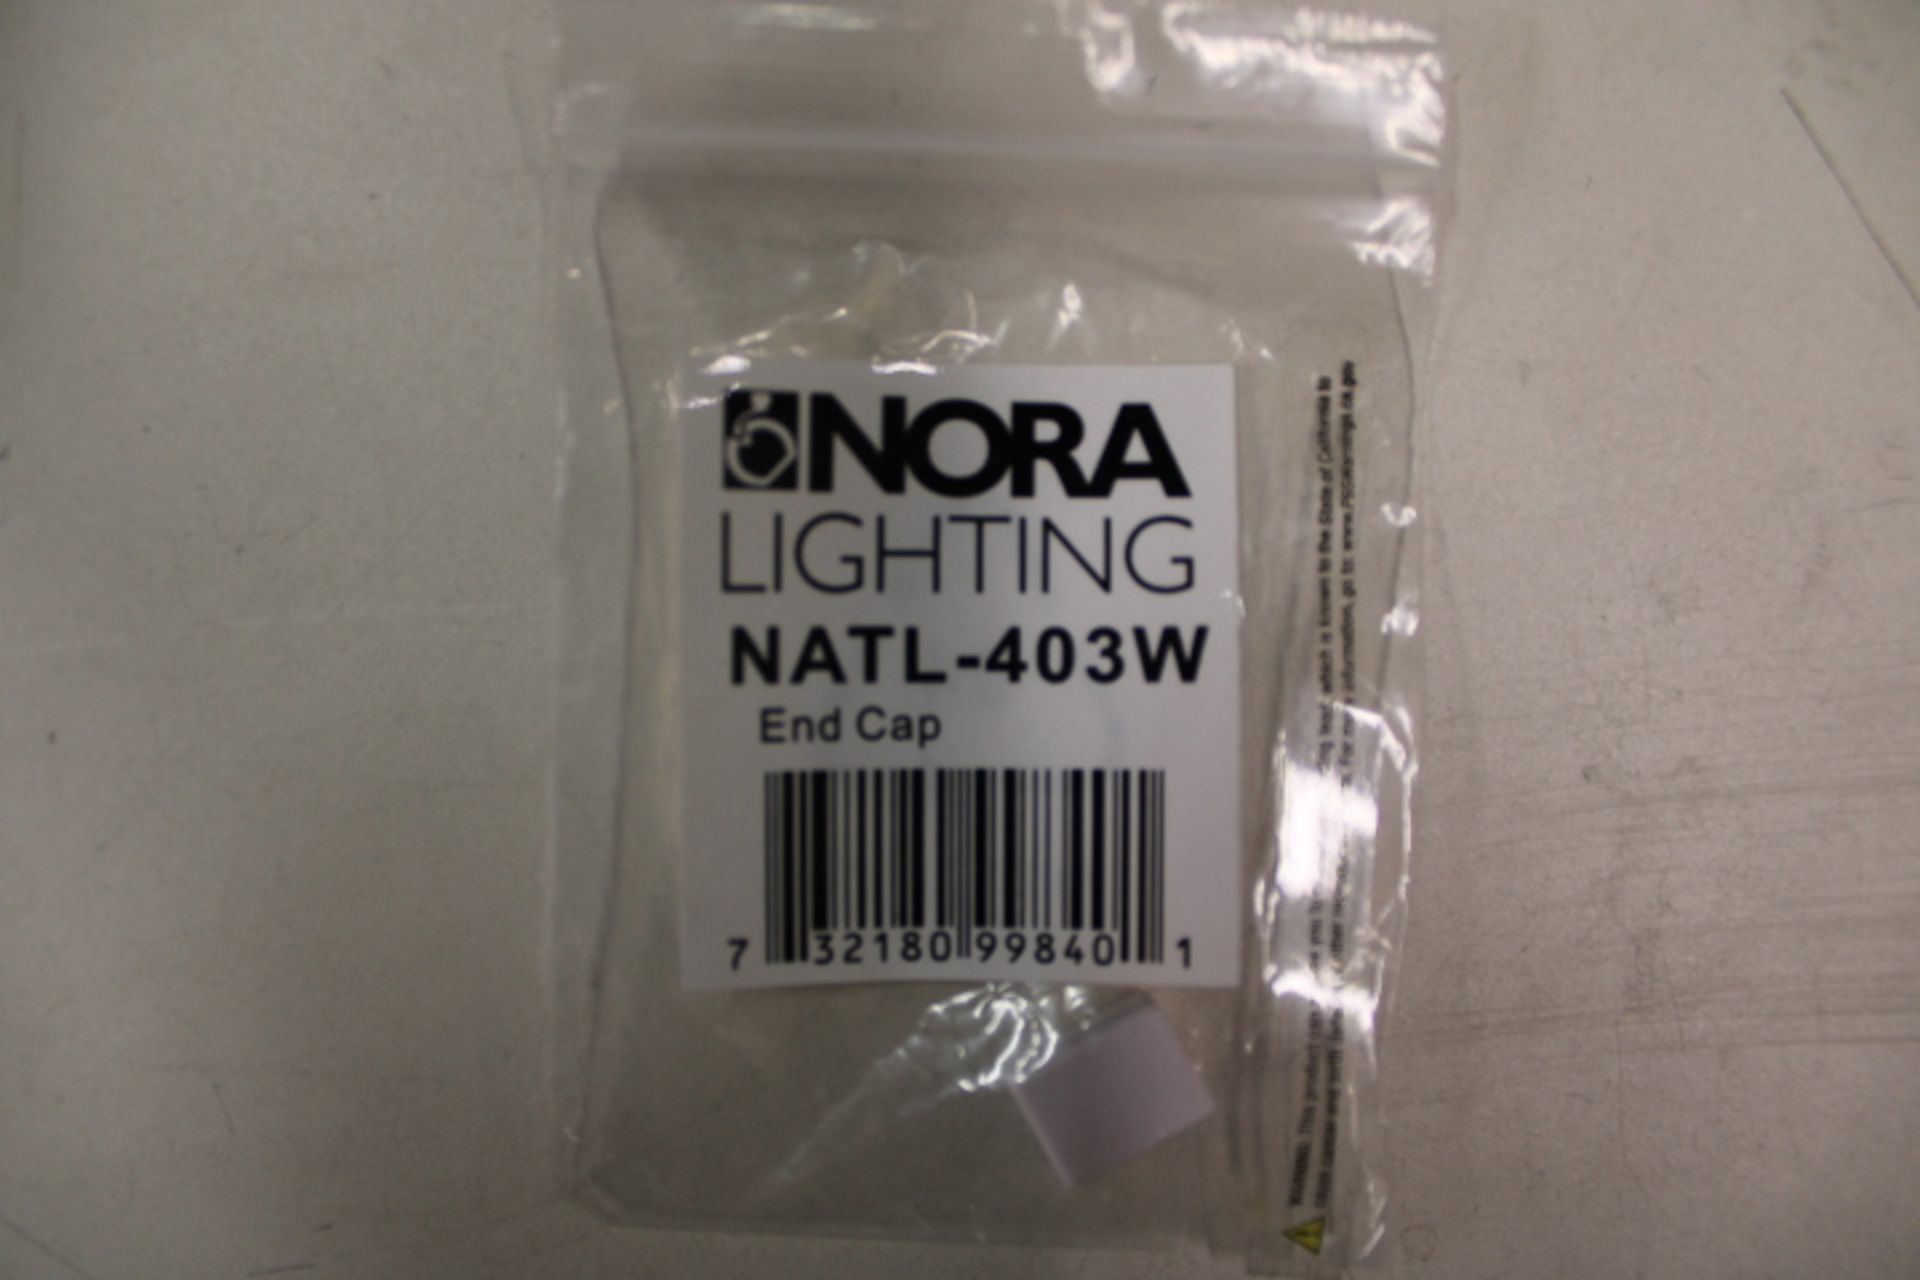 3x Nora Lighting NATL-403W Other Lighting Fixtures/Trim/Accessories EA